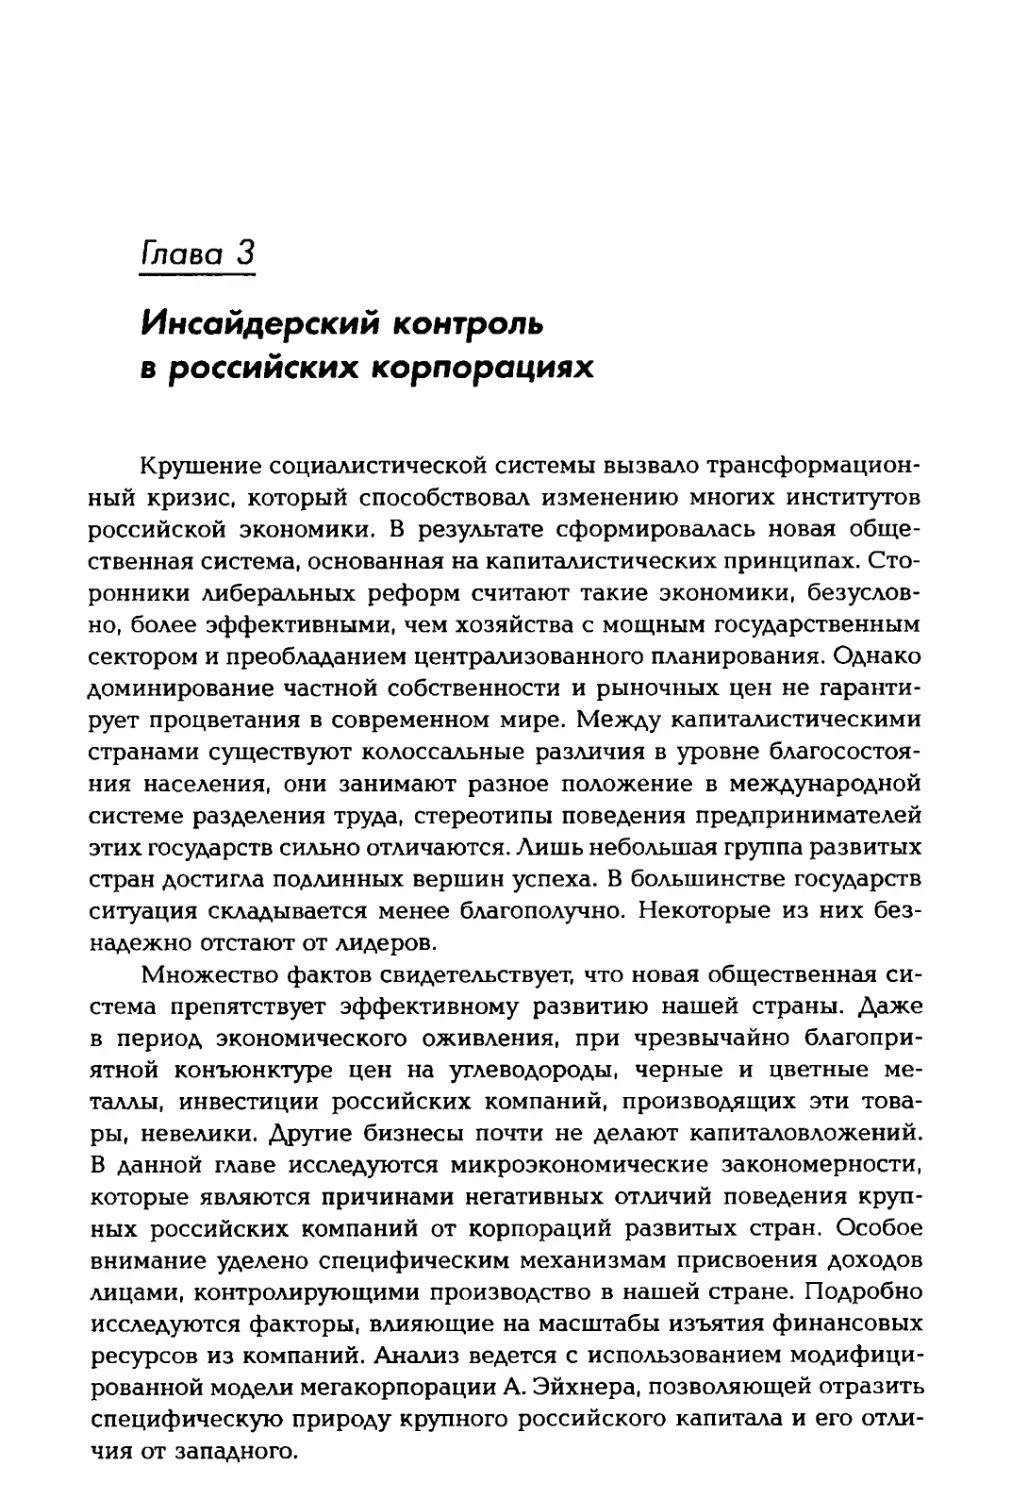 Глава 3. Инсайдерский контроль в российских корпорациях